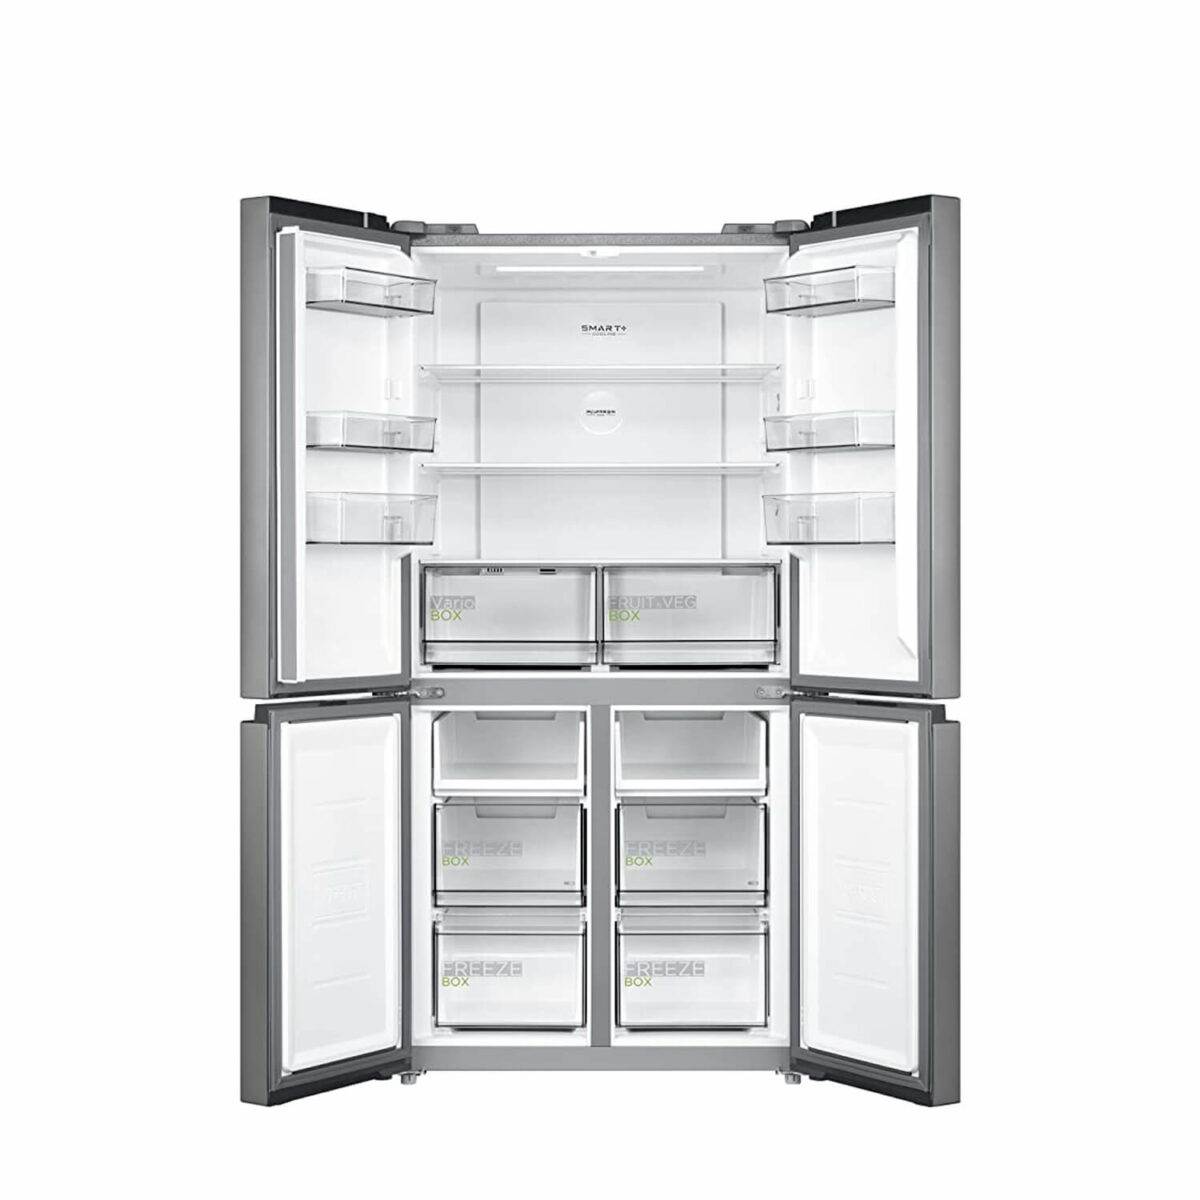 Midea MDRF632FGF46 470 Litre French Door Refrigerator inside